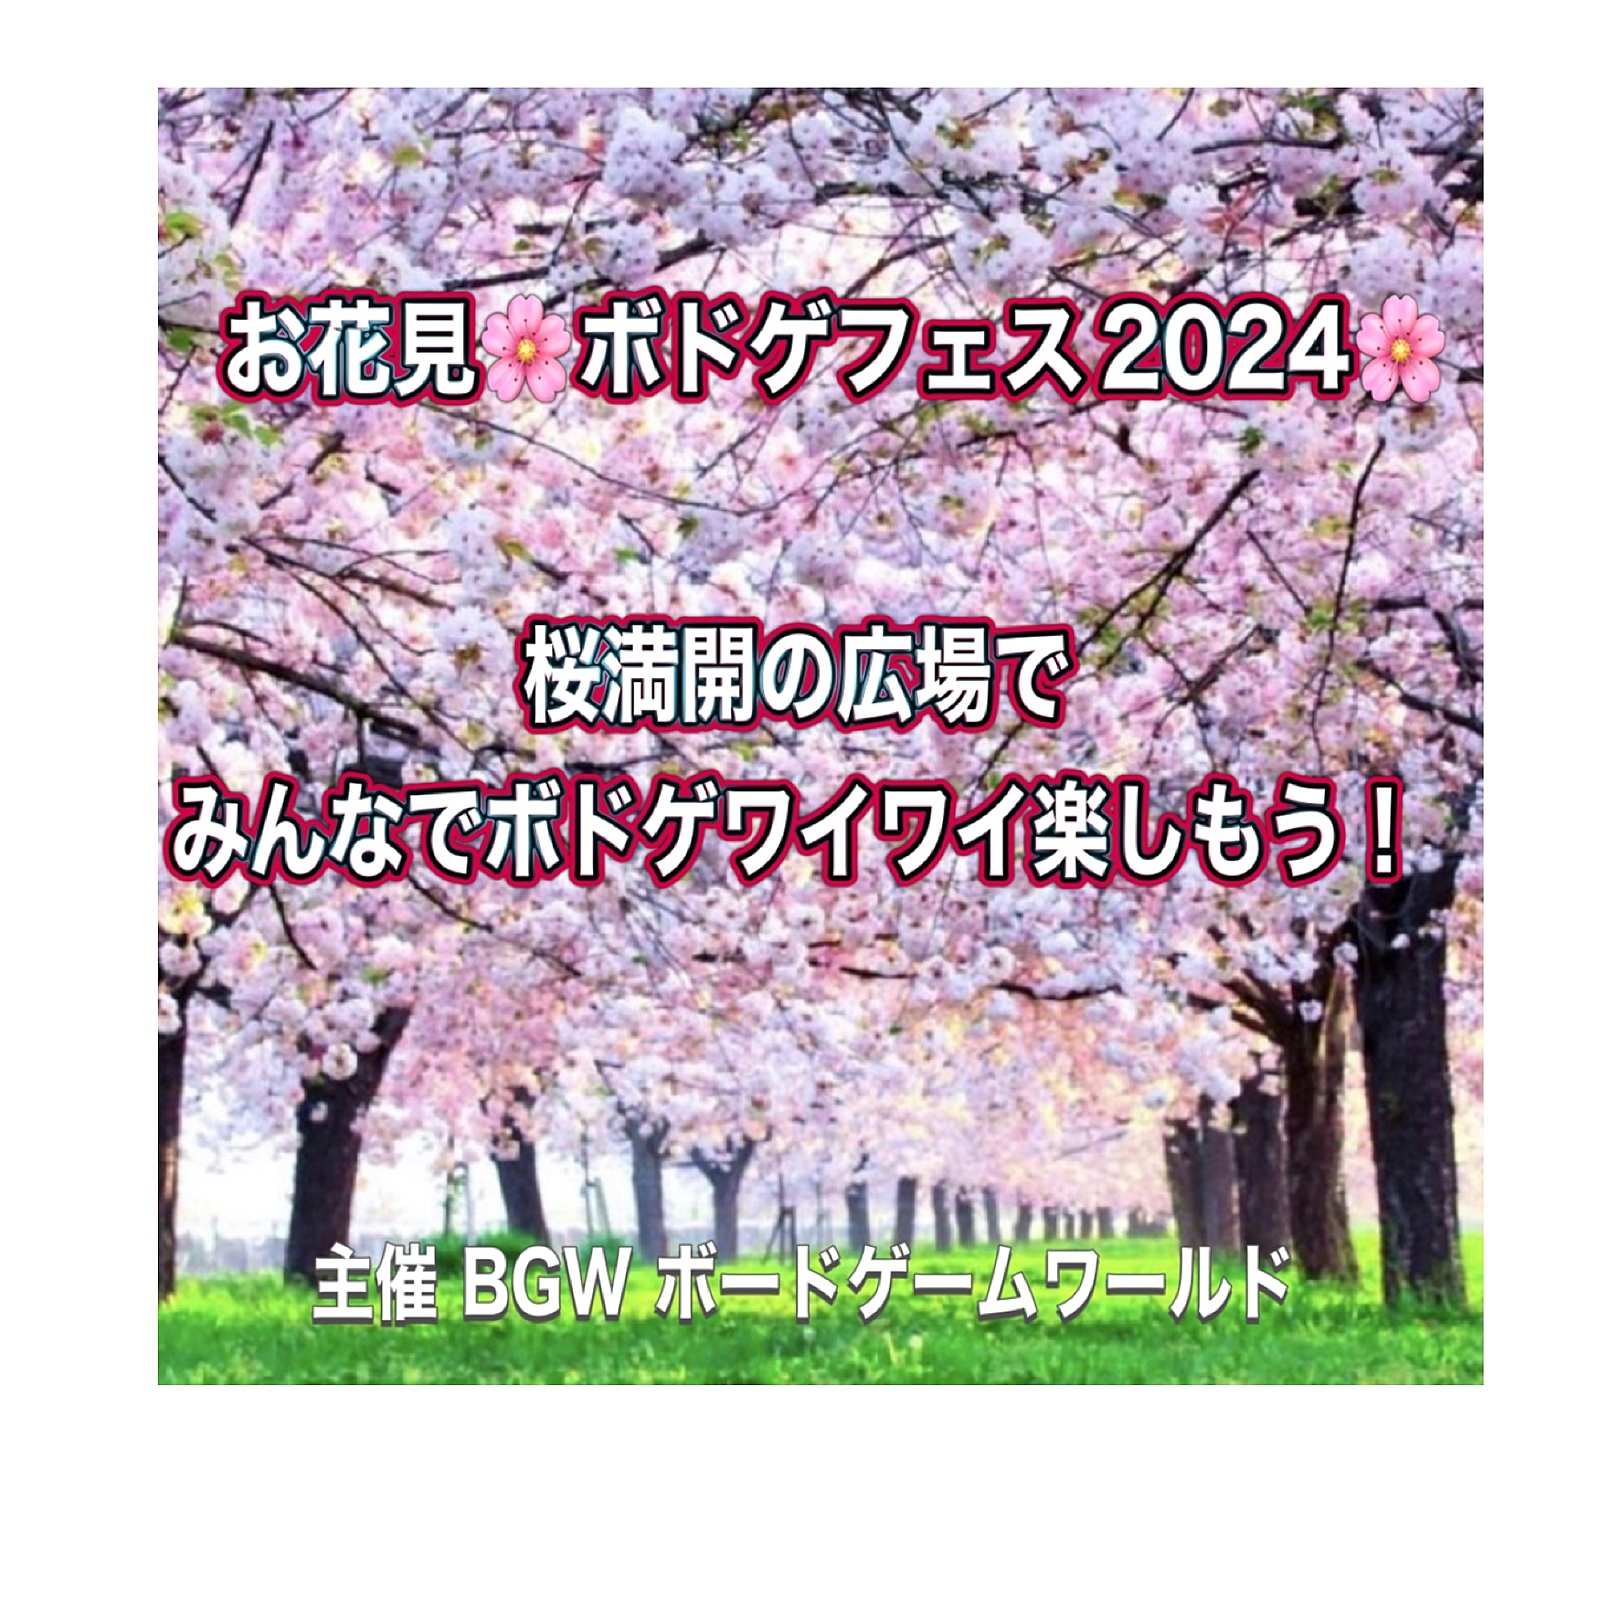  お花見🌸ボドゲフェス2024🌸  超早割 300円〜 3/24(日)13:00〜19:00